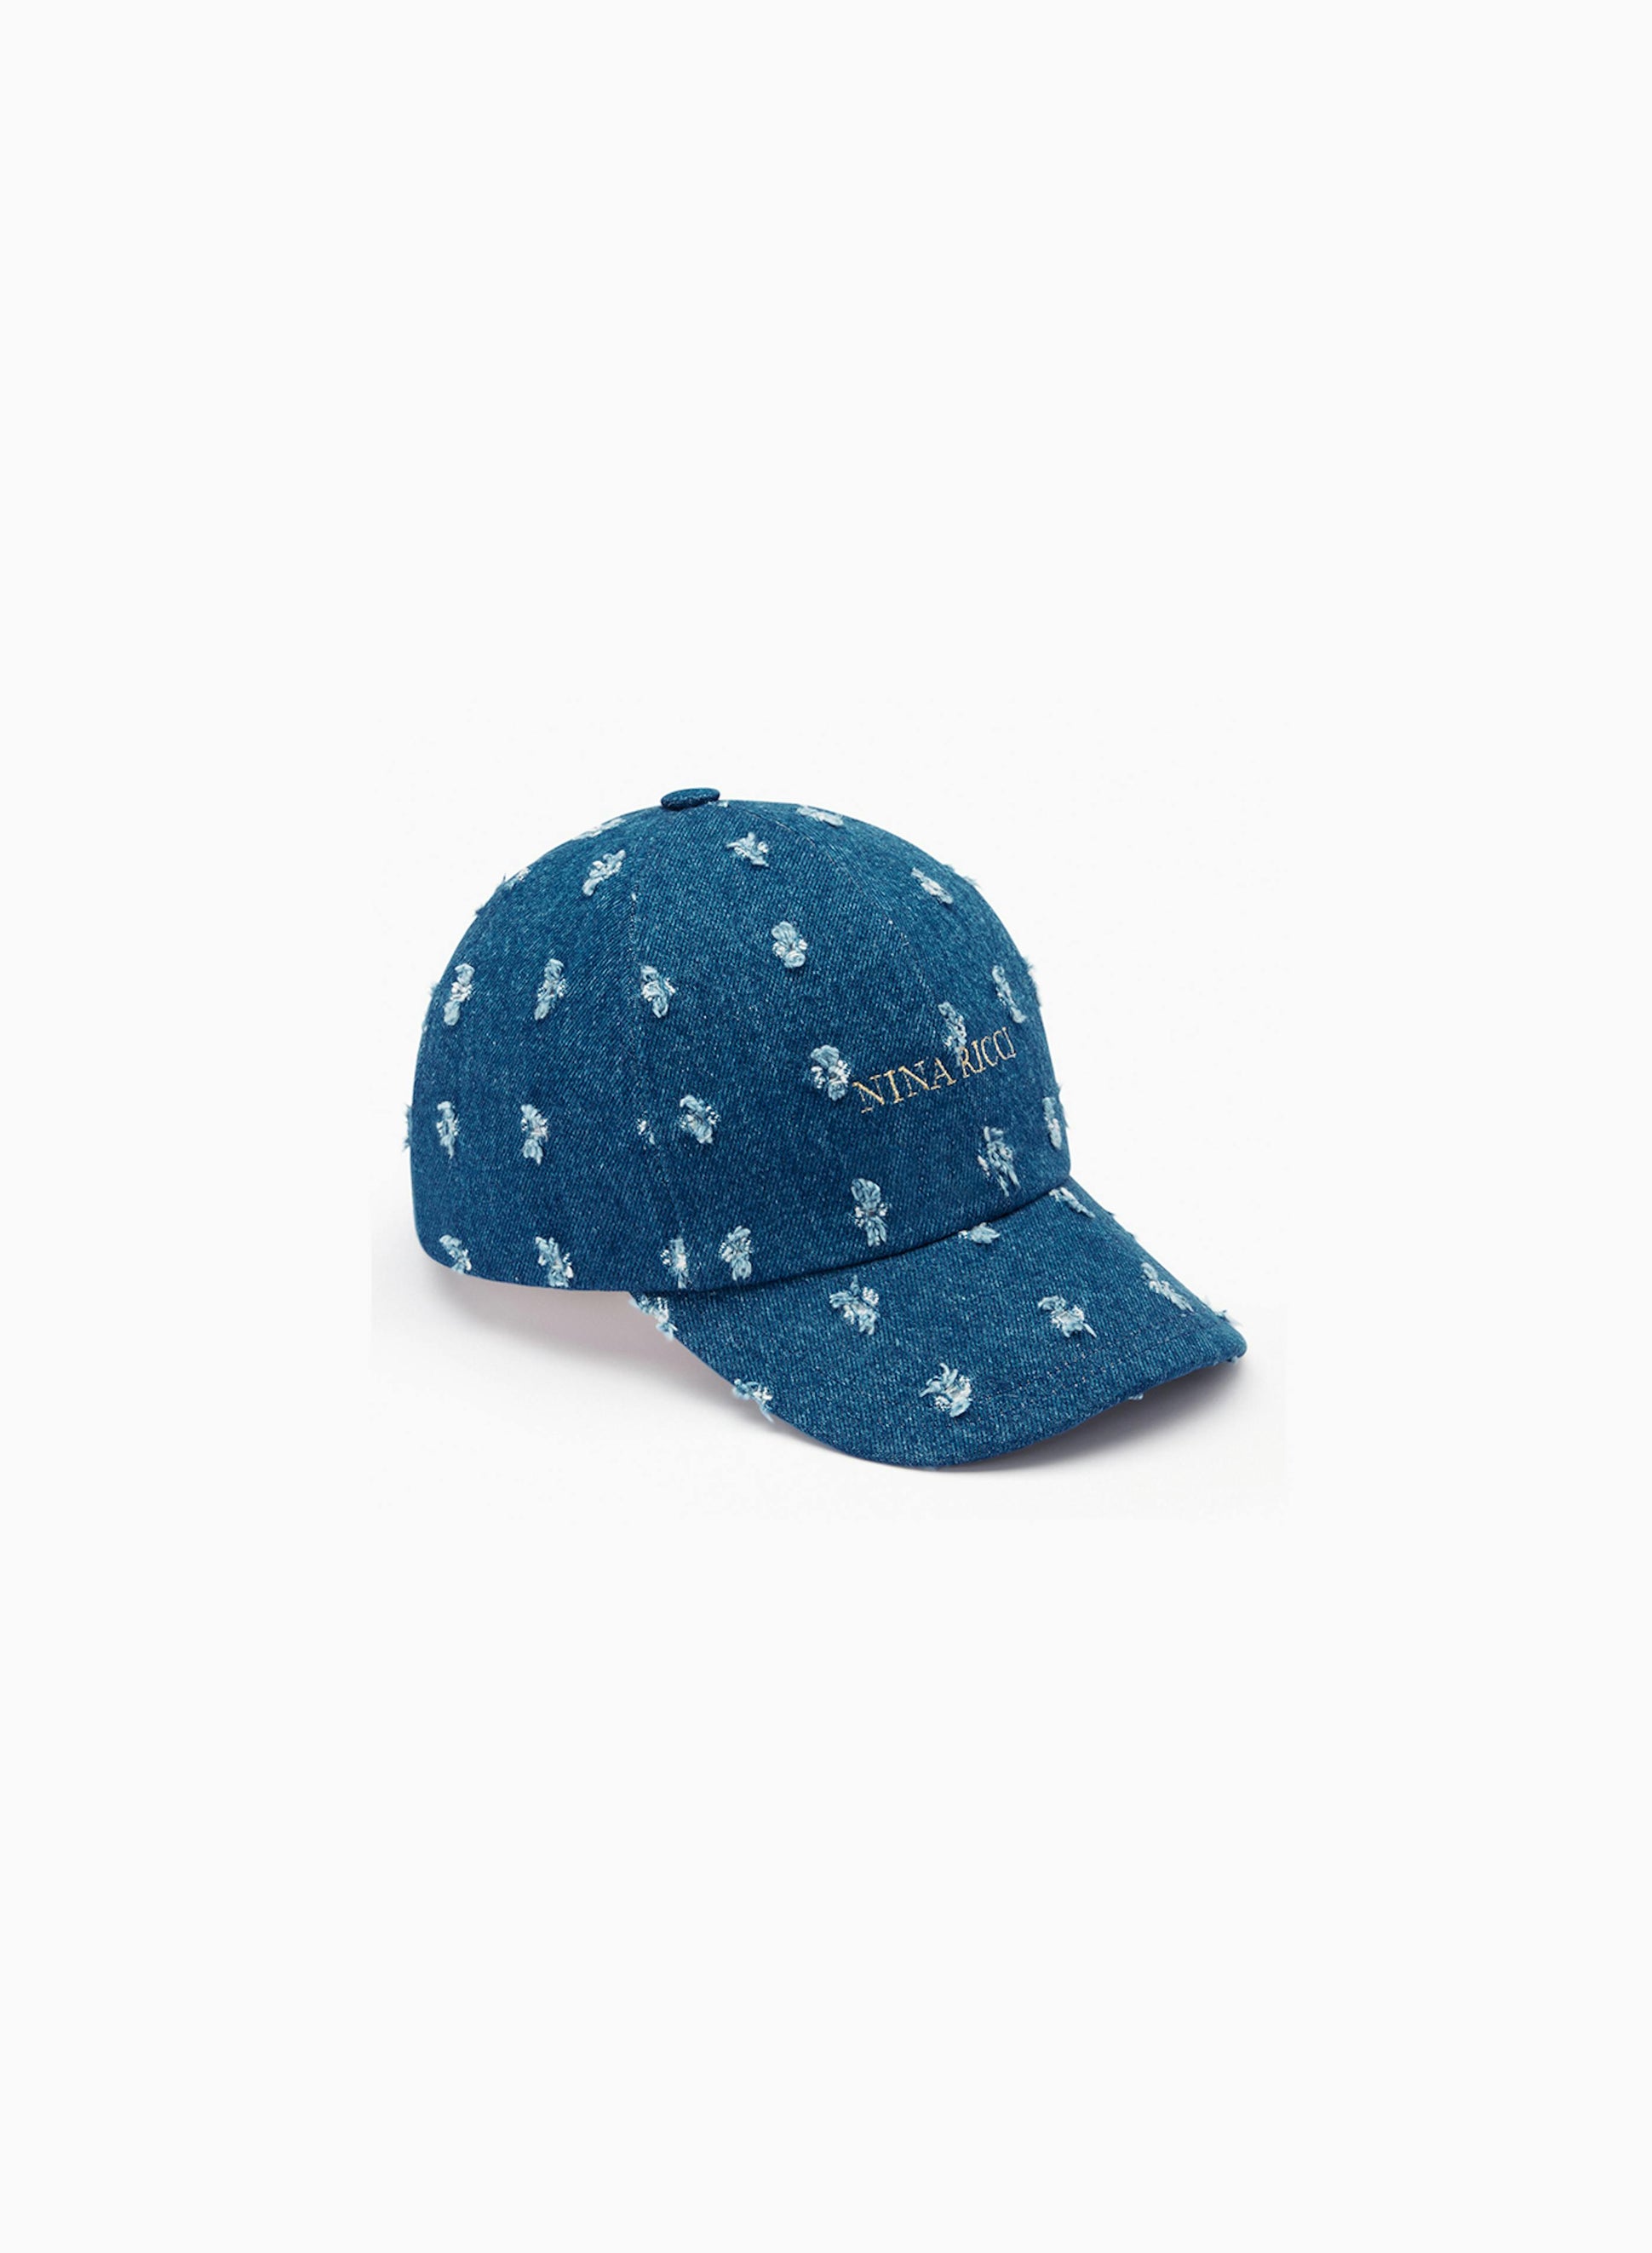 Distressed denim baseball cap - Nina Ricci